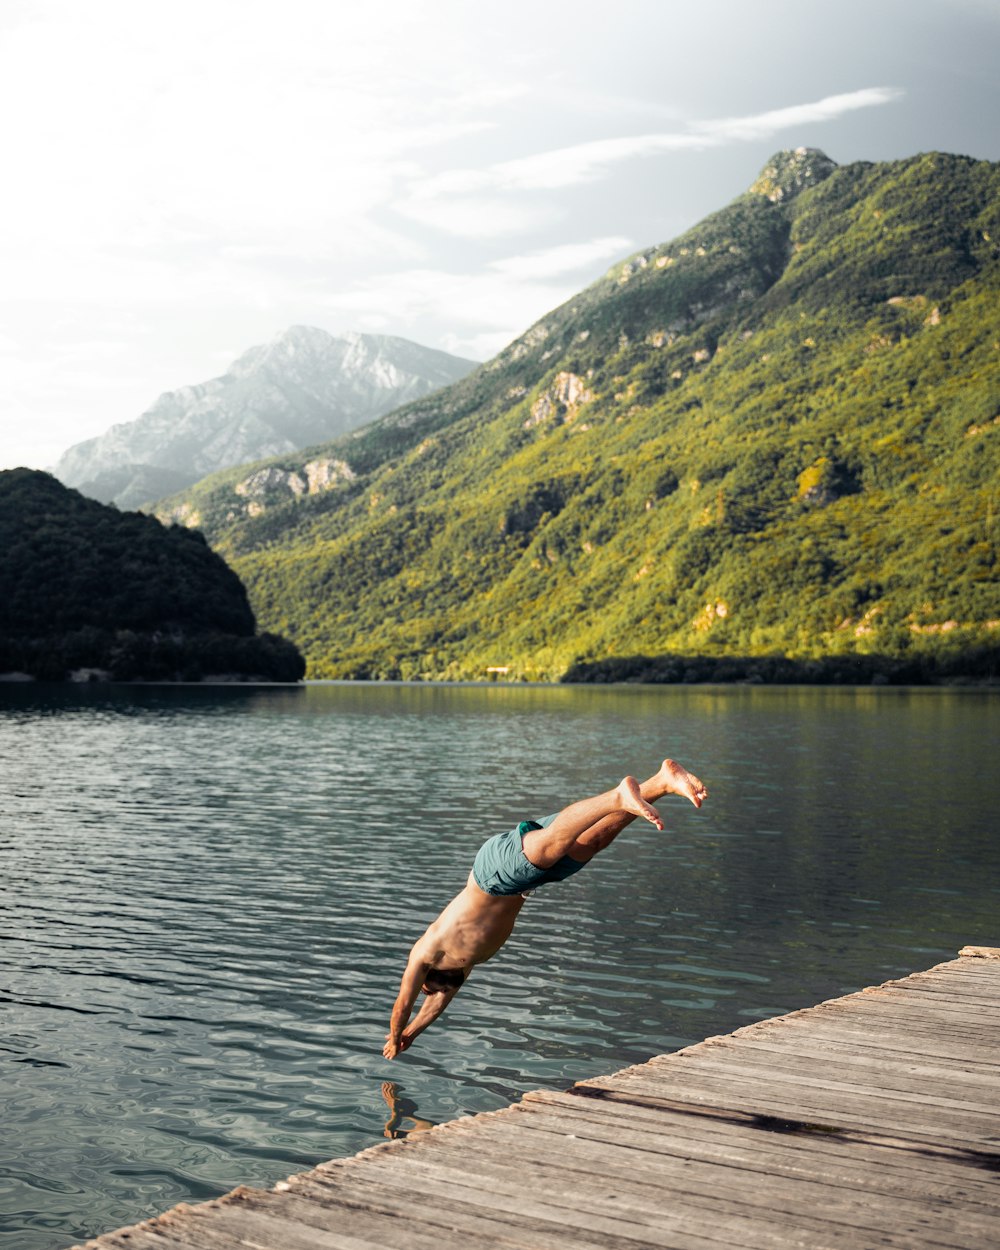 woman in teal bikini jumping on water near green mountain during daytime